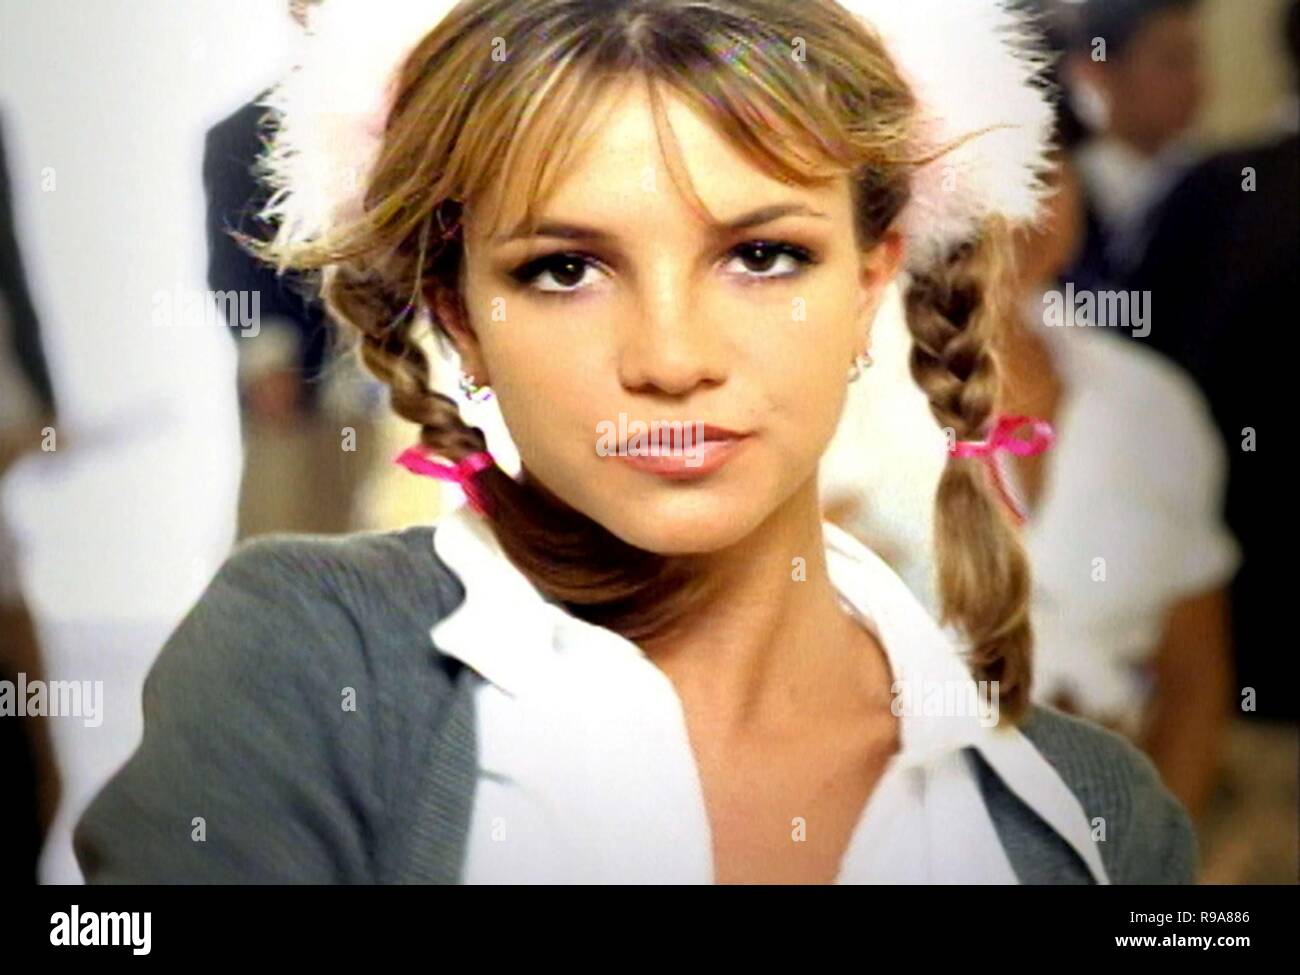 Escena del vidoclip "Baby One More Time" de la cantante Britney Spears  Stock Photo - Alamy